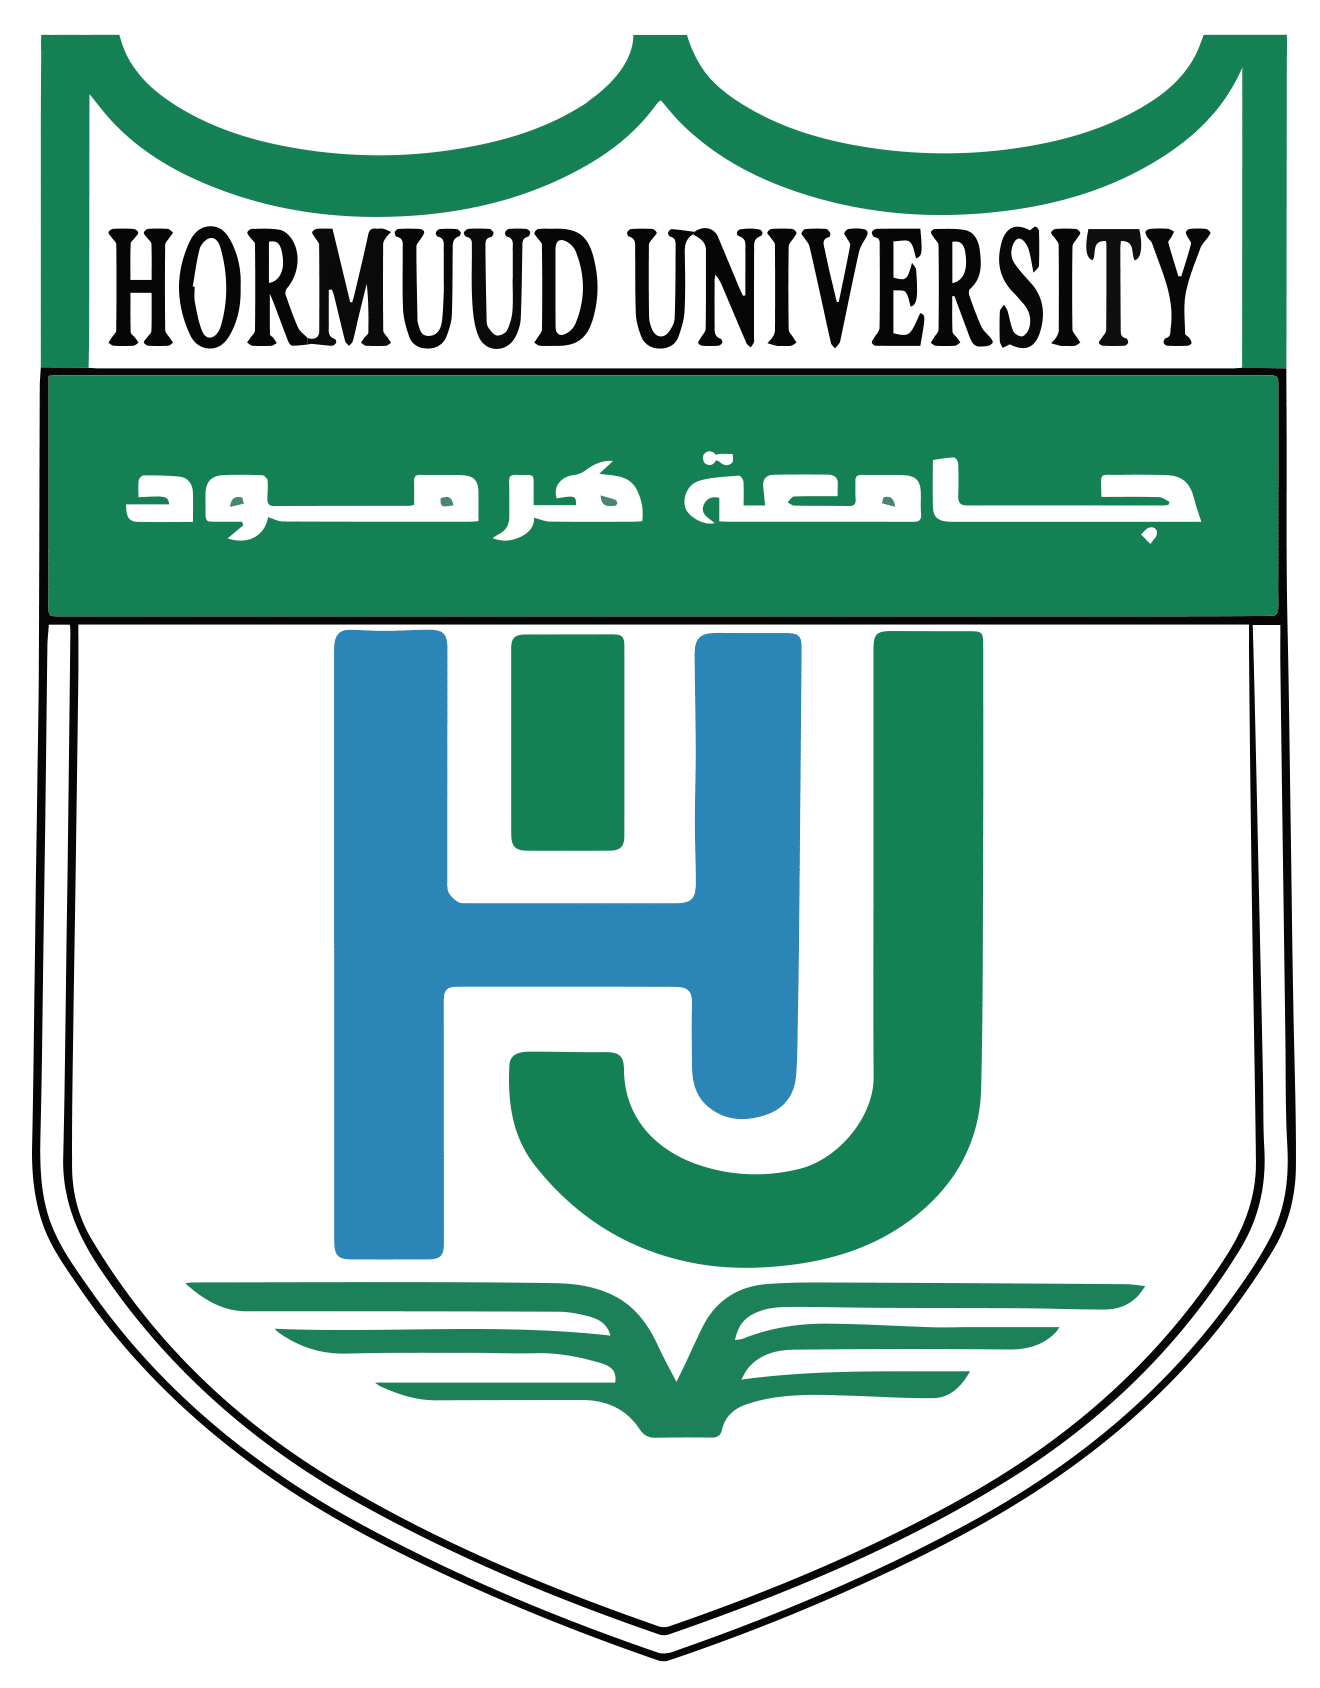 Hormuud university logo